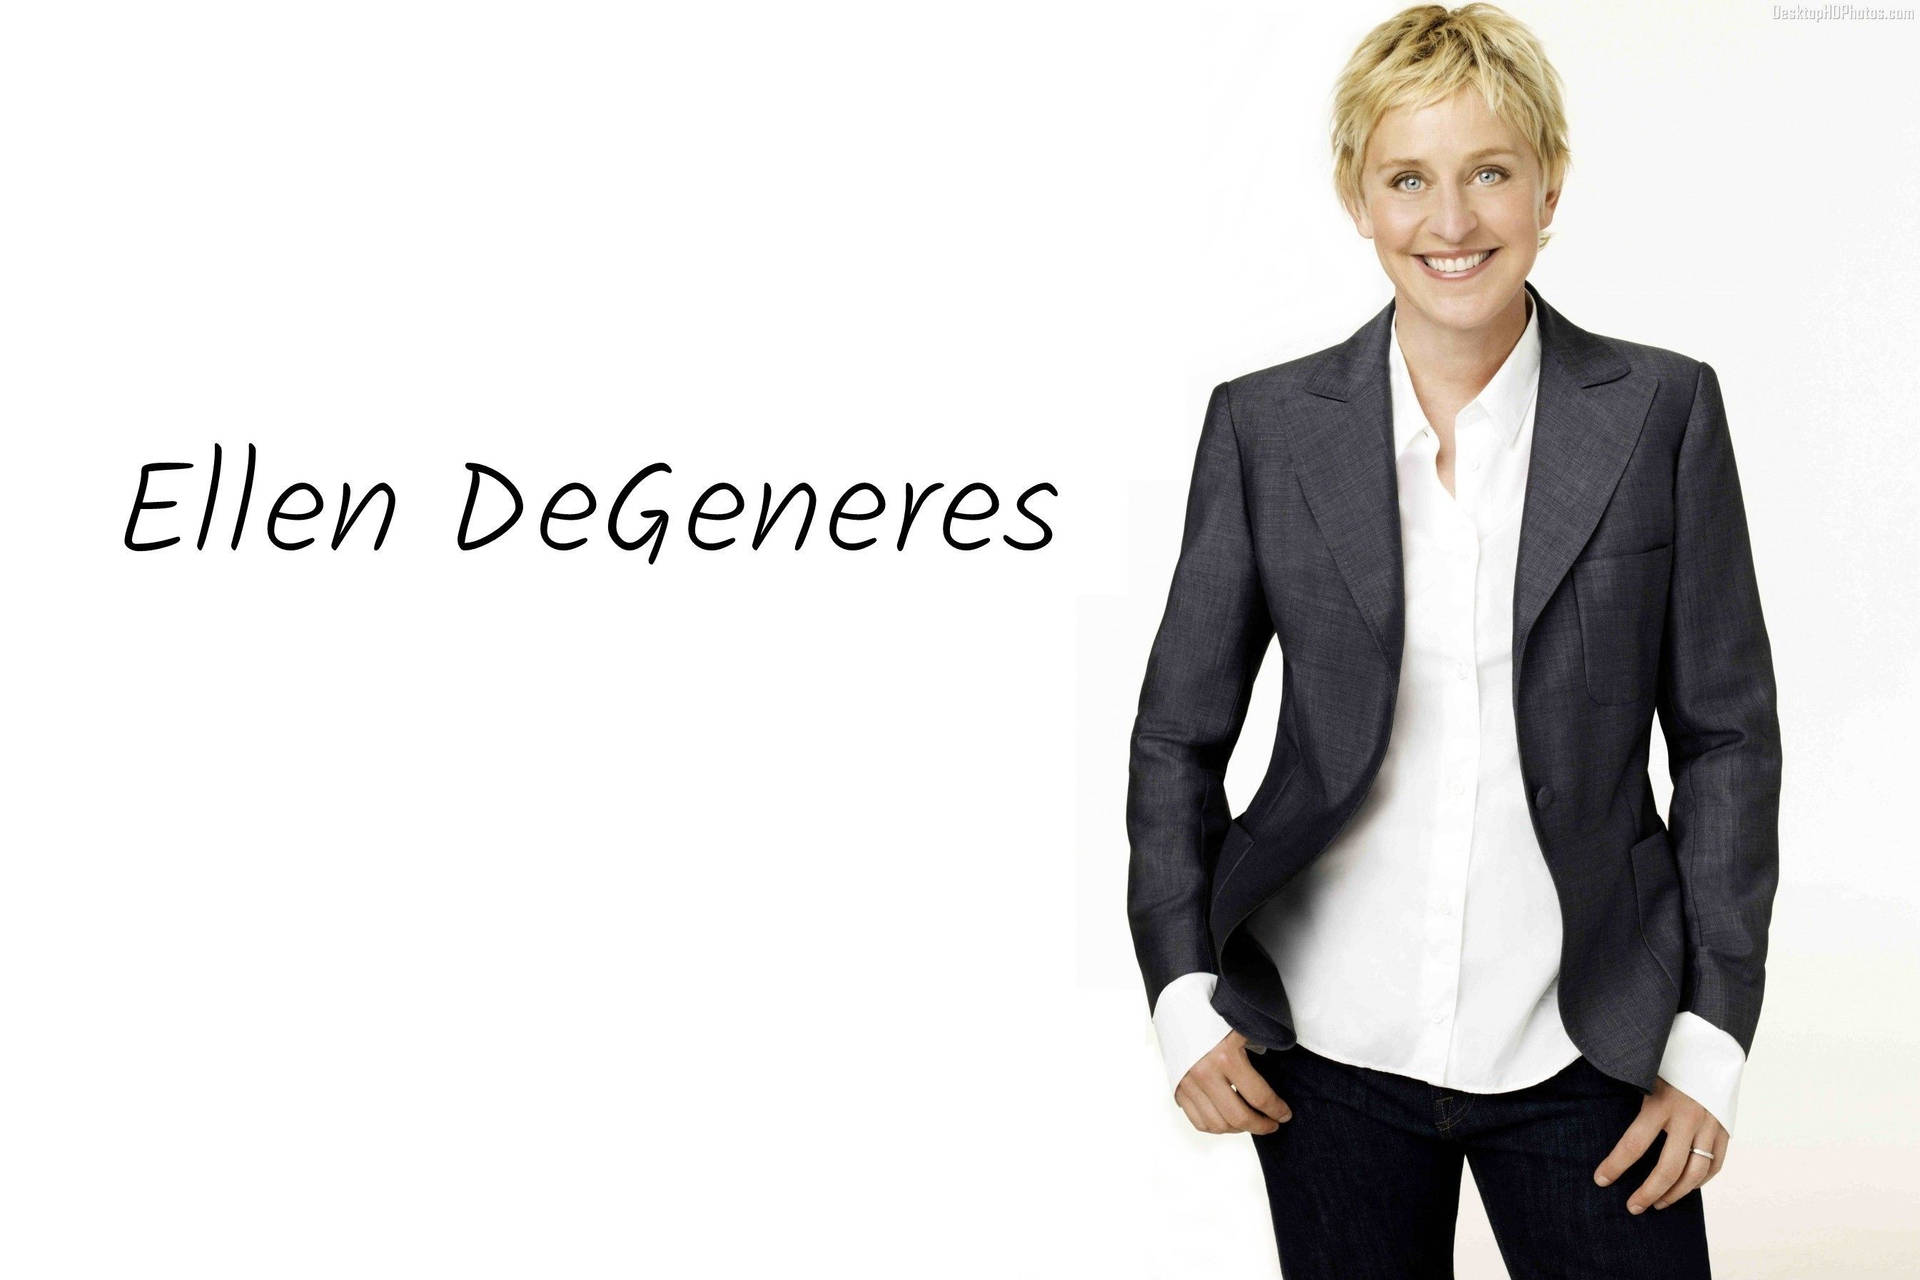 Ellen Degeneres Poster With His Name